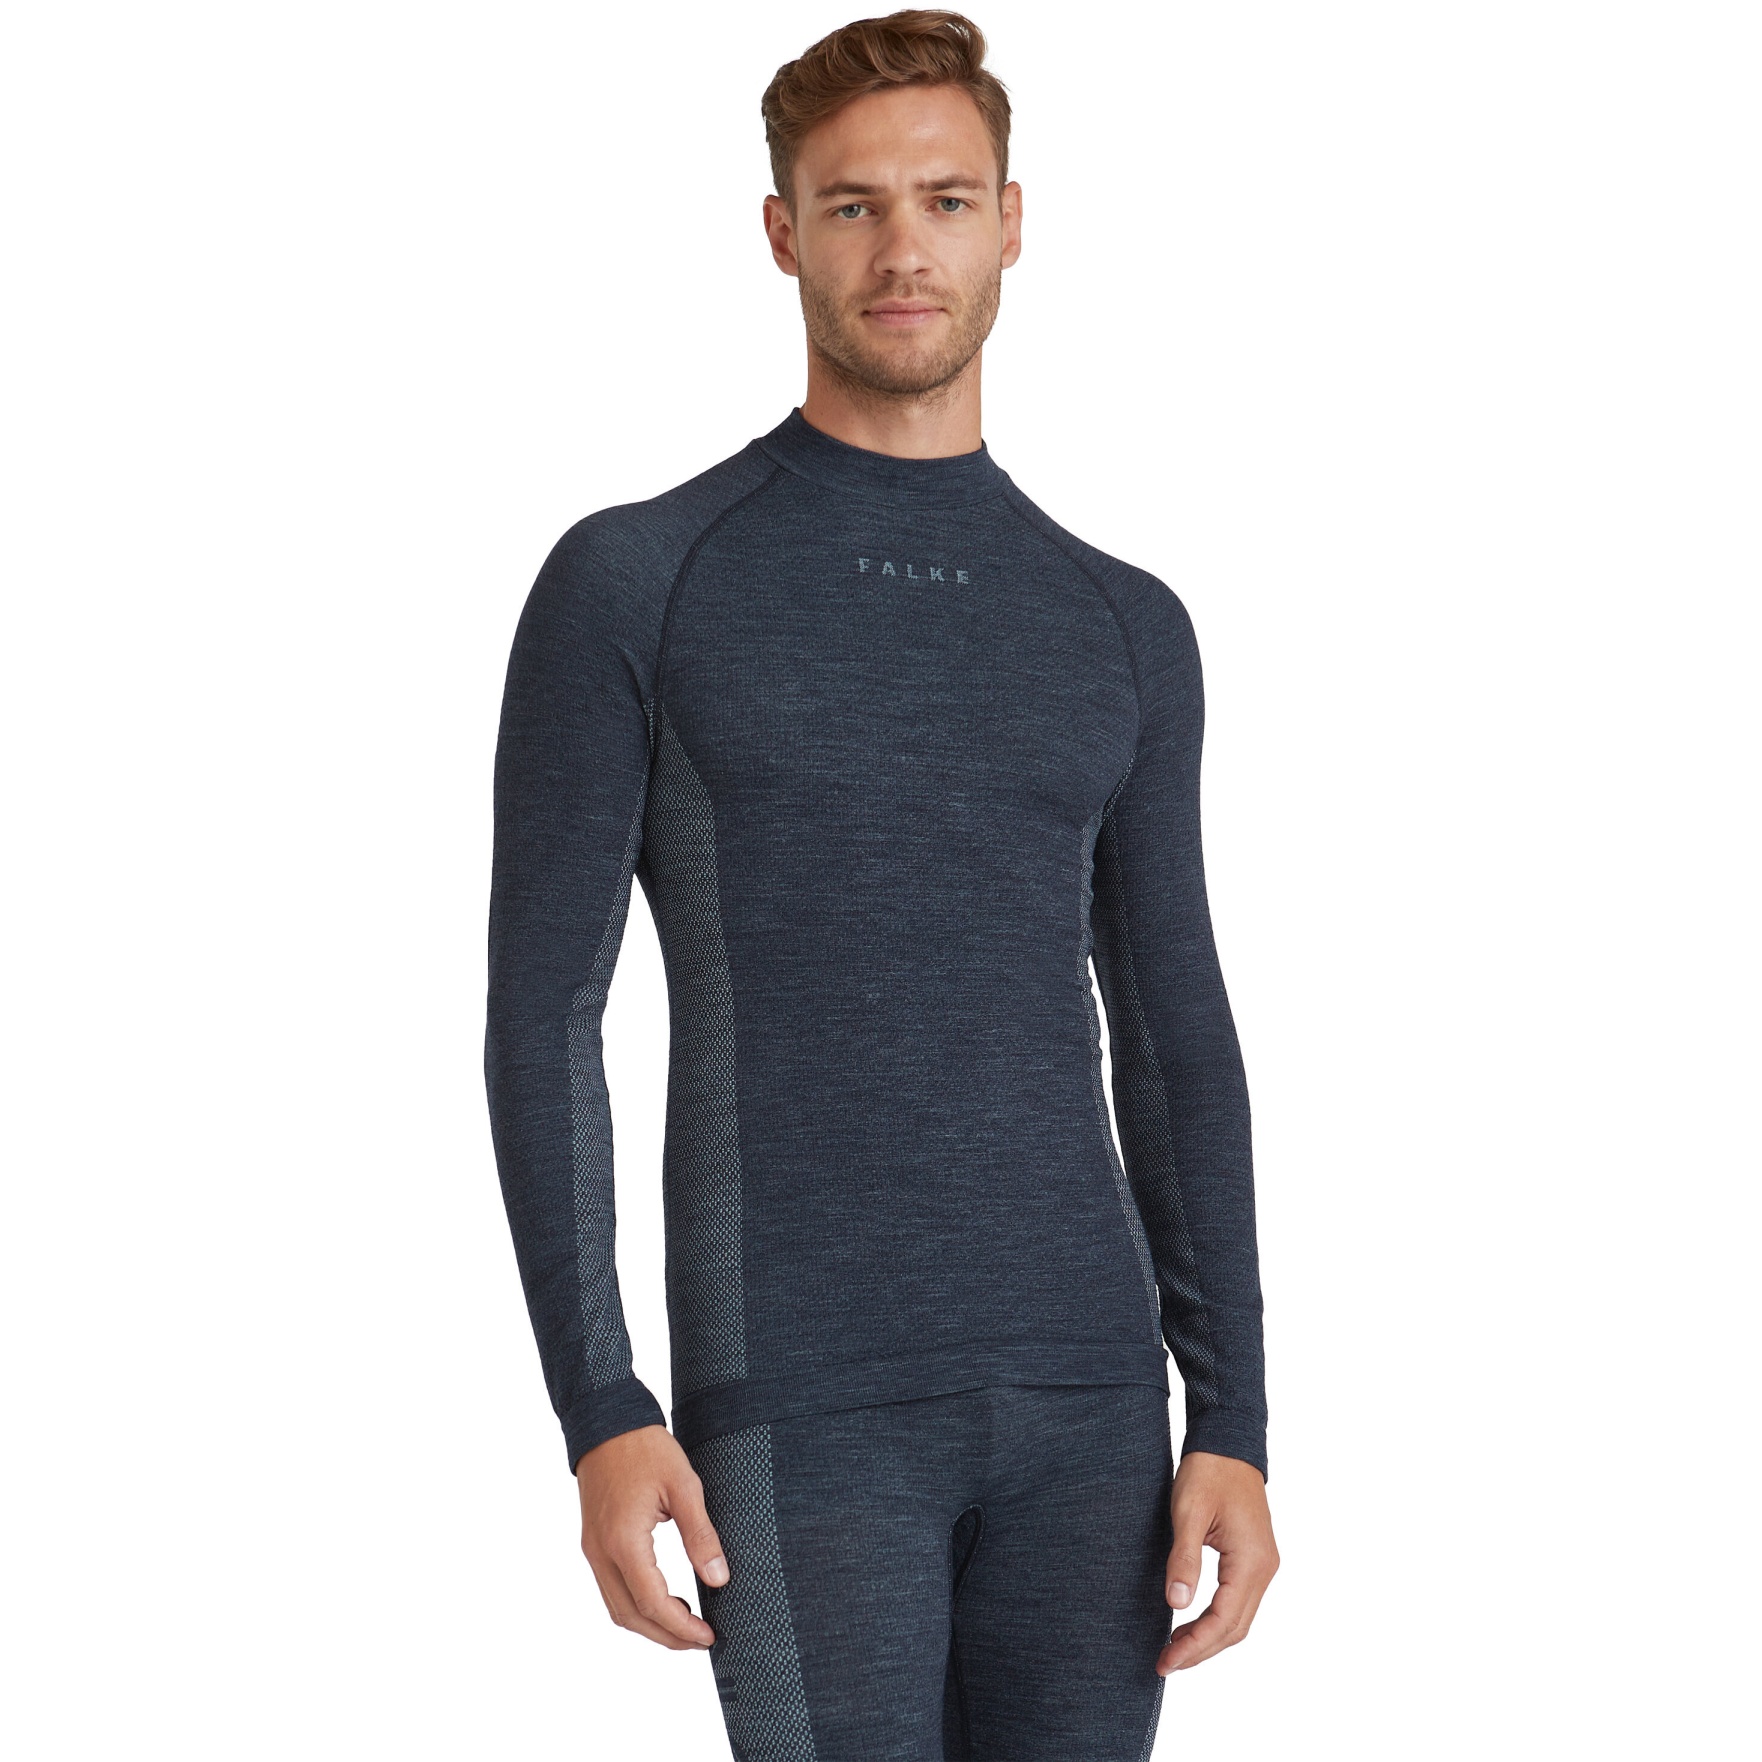 Picture of Falke Wool-Tech Trend Longsleeve Shirt - space blue 6116